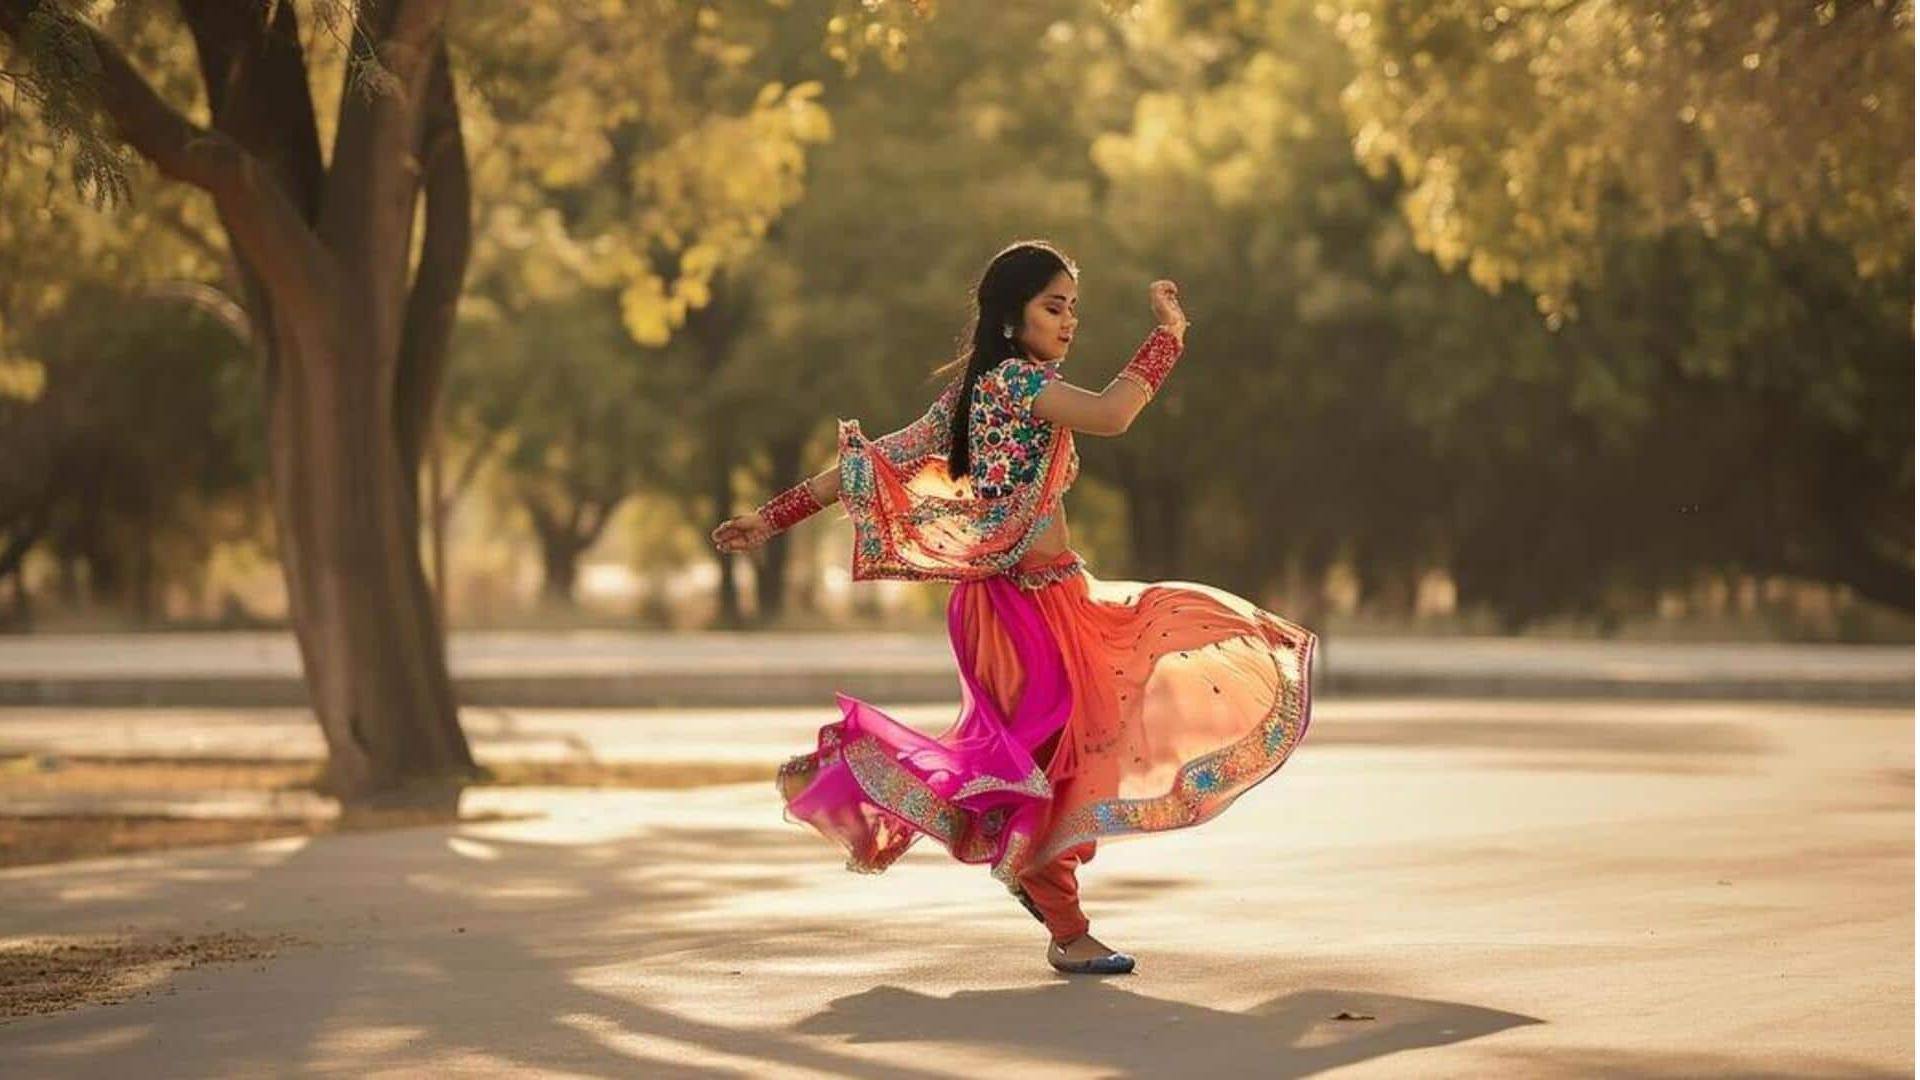 Menghidupkan kembali pesona ghagra: Rok tradisional yang kembali populer